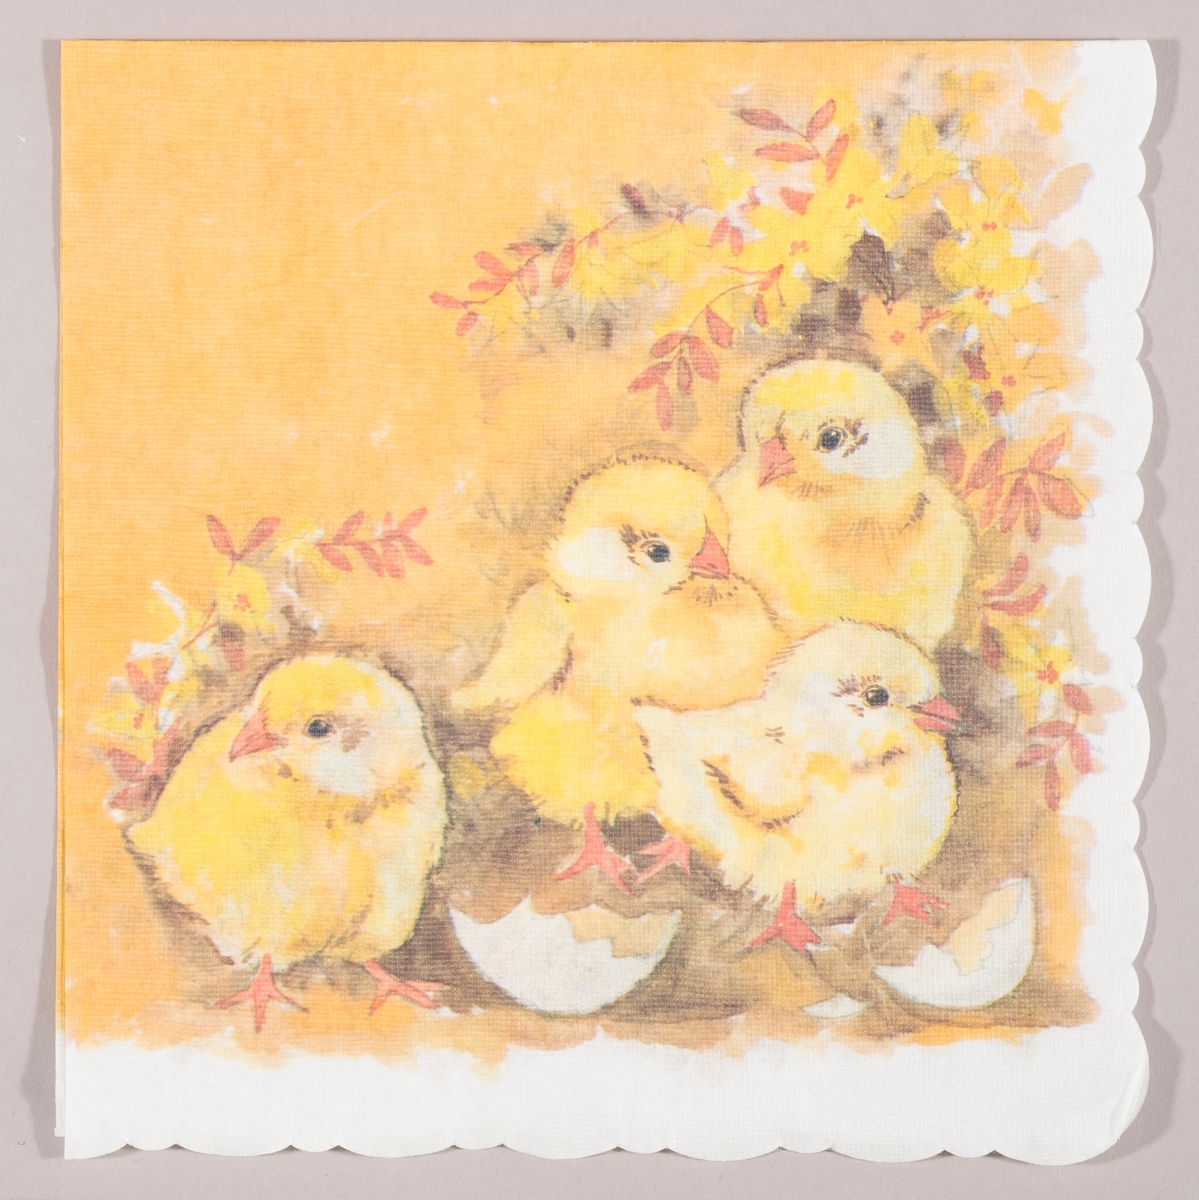 Fire kyllinger og skall av egg. gule blomster og oransje blader.